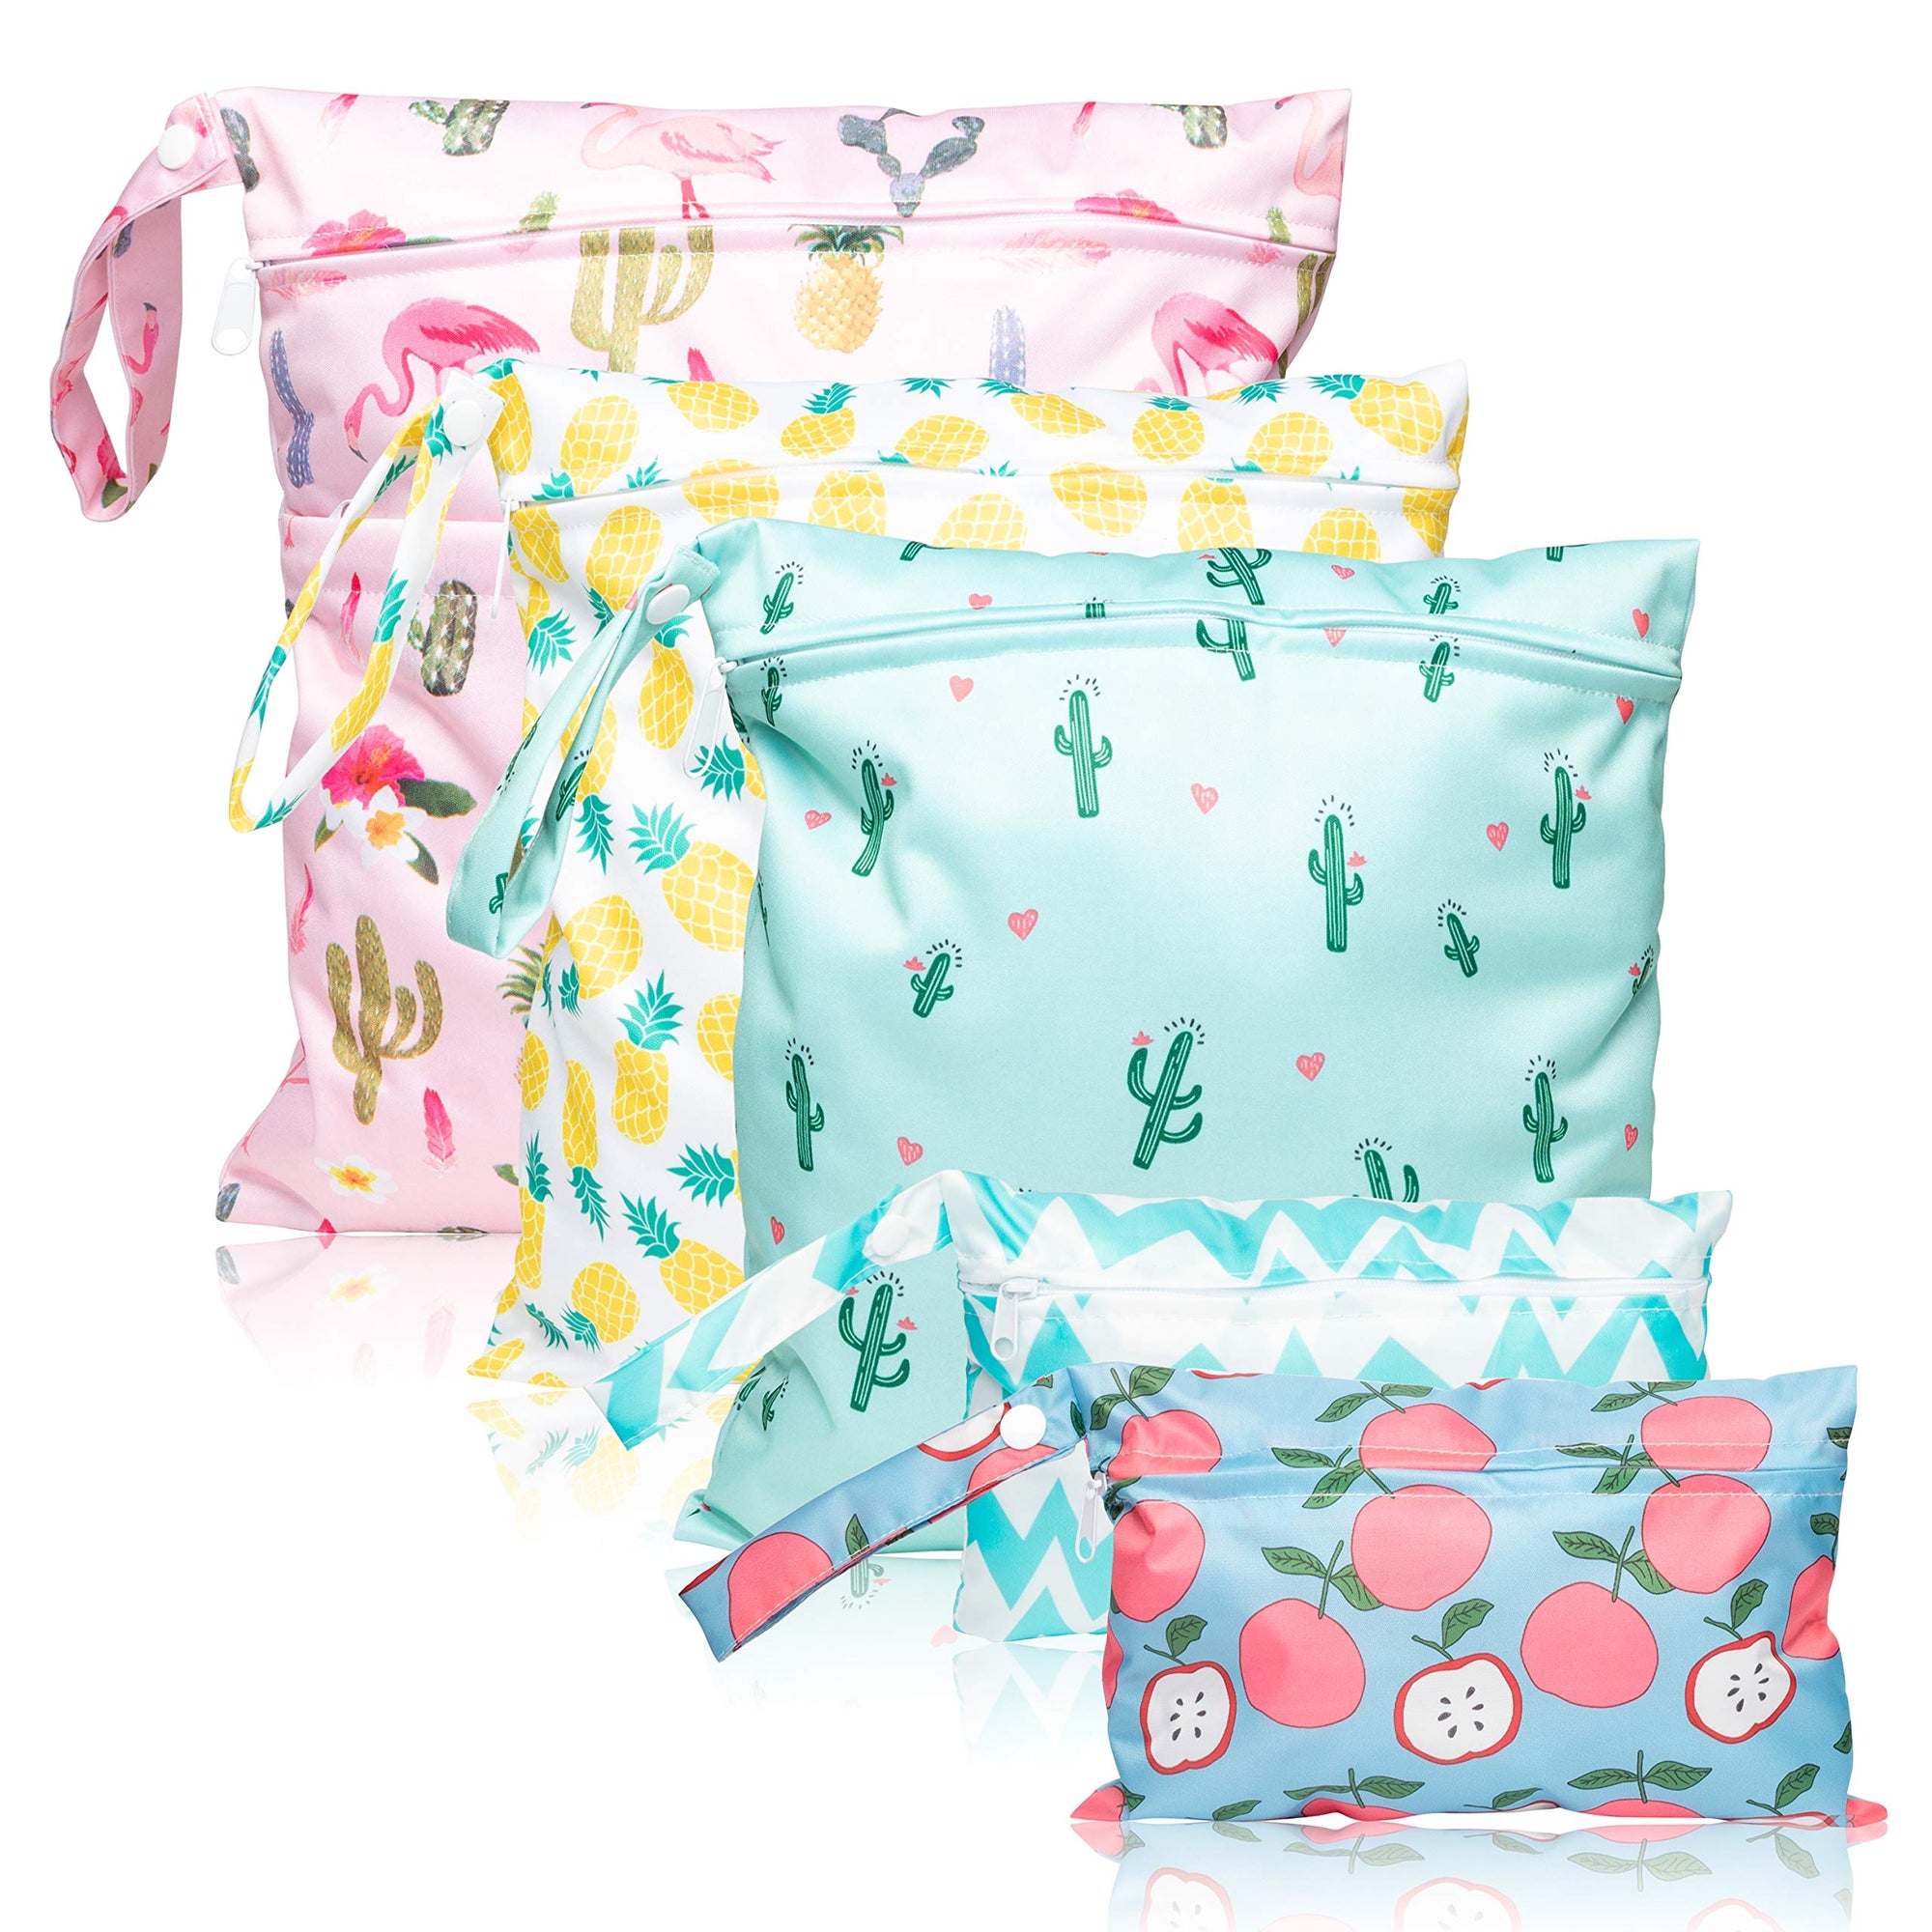 5 bolsas impermeables reutilizables para pañales de tela para bebé, bolsas de verano húmedos y secos